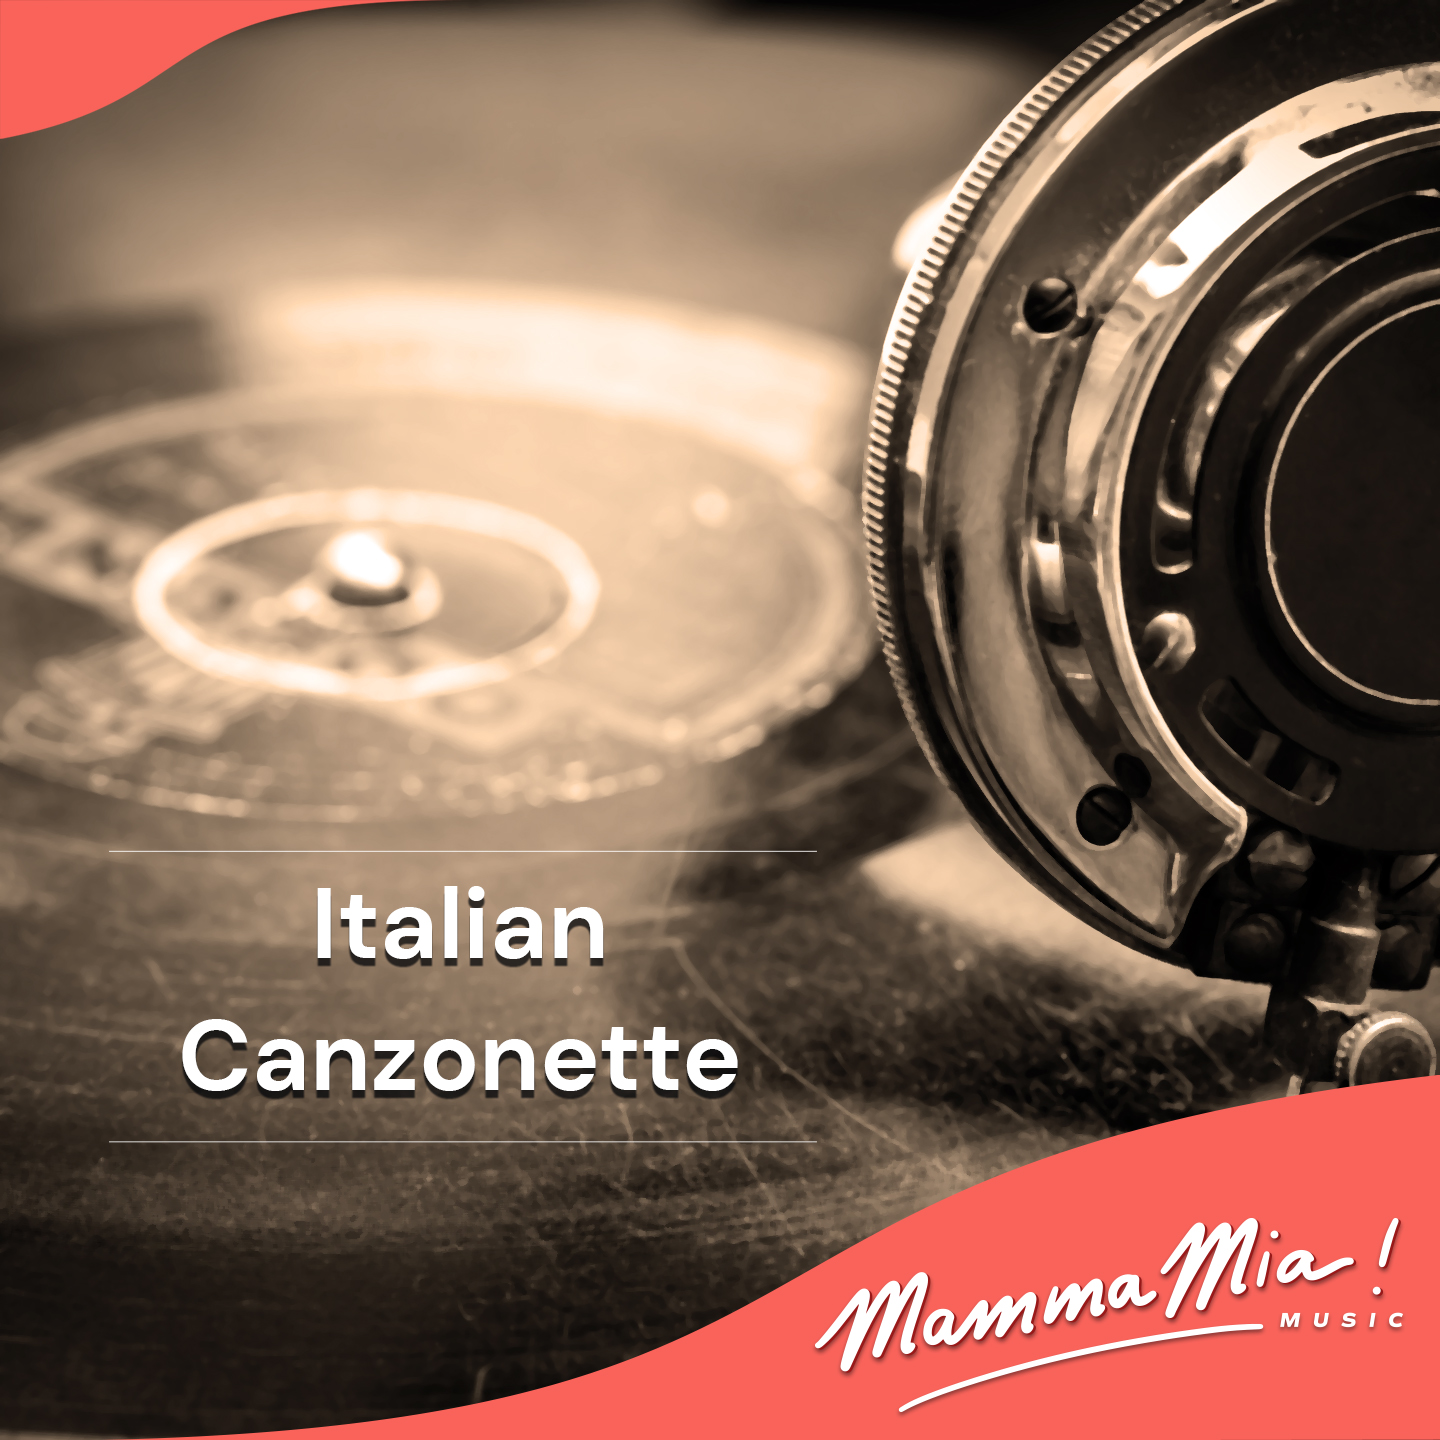 Italian Canzonette